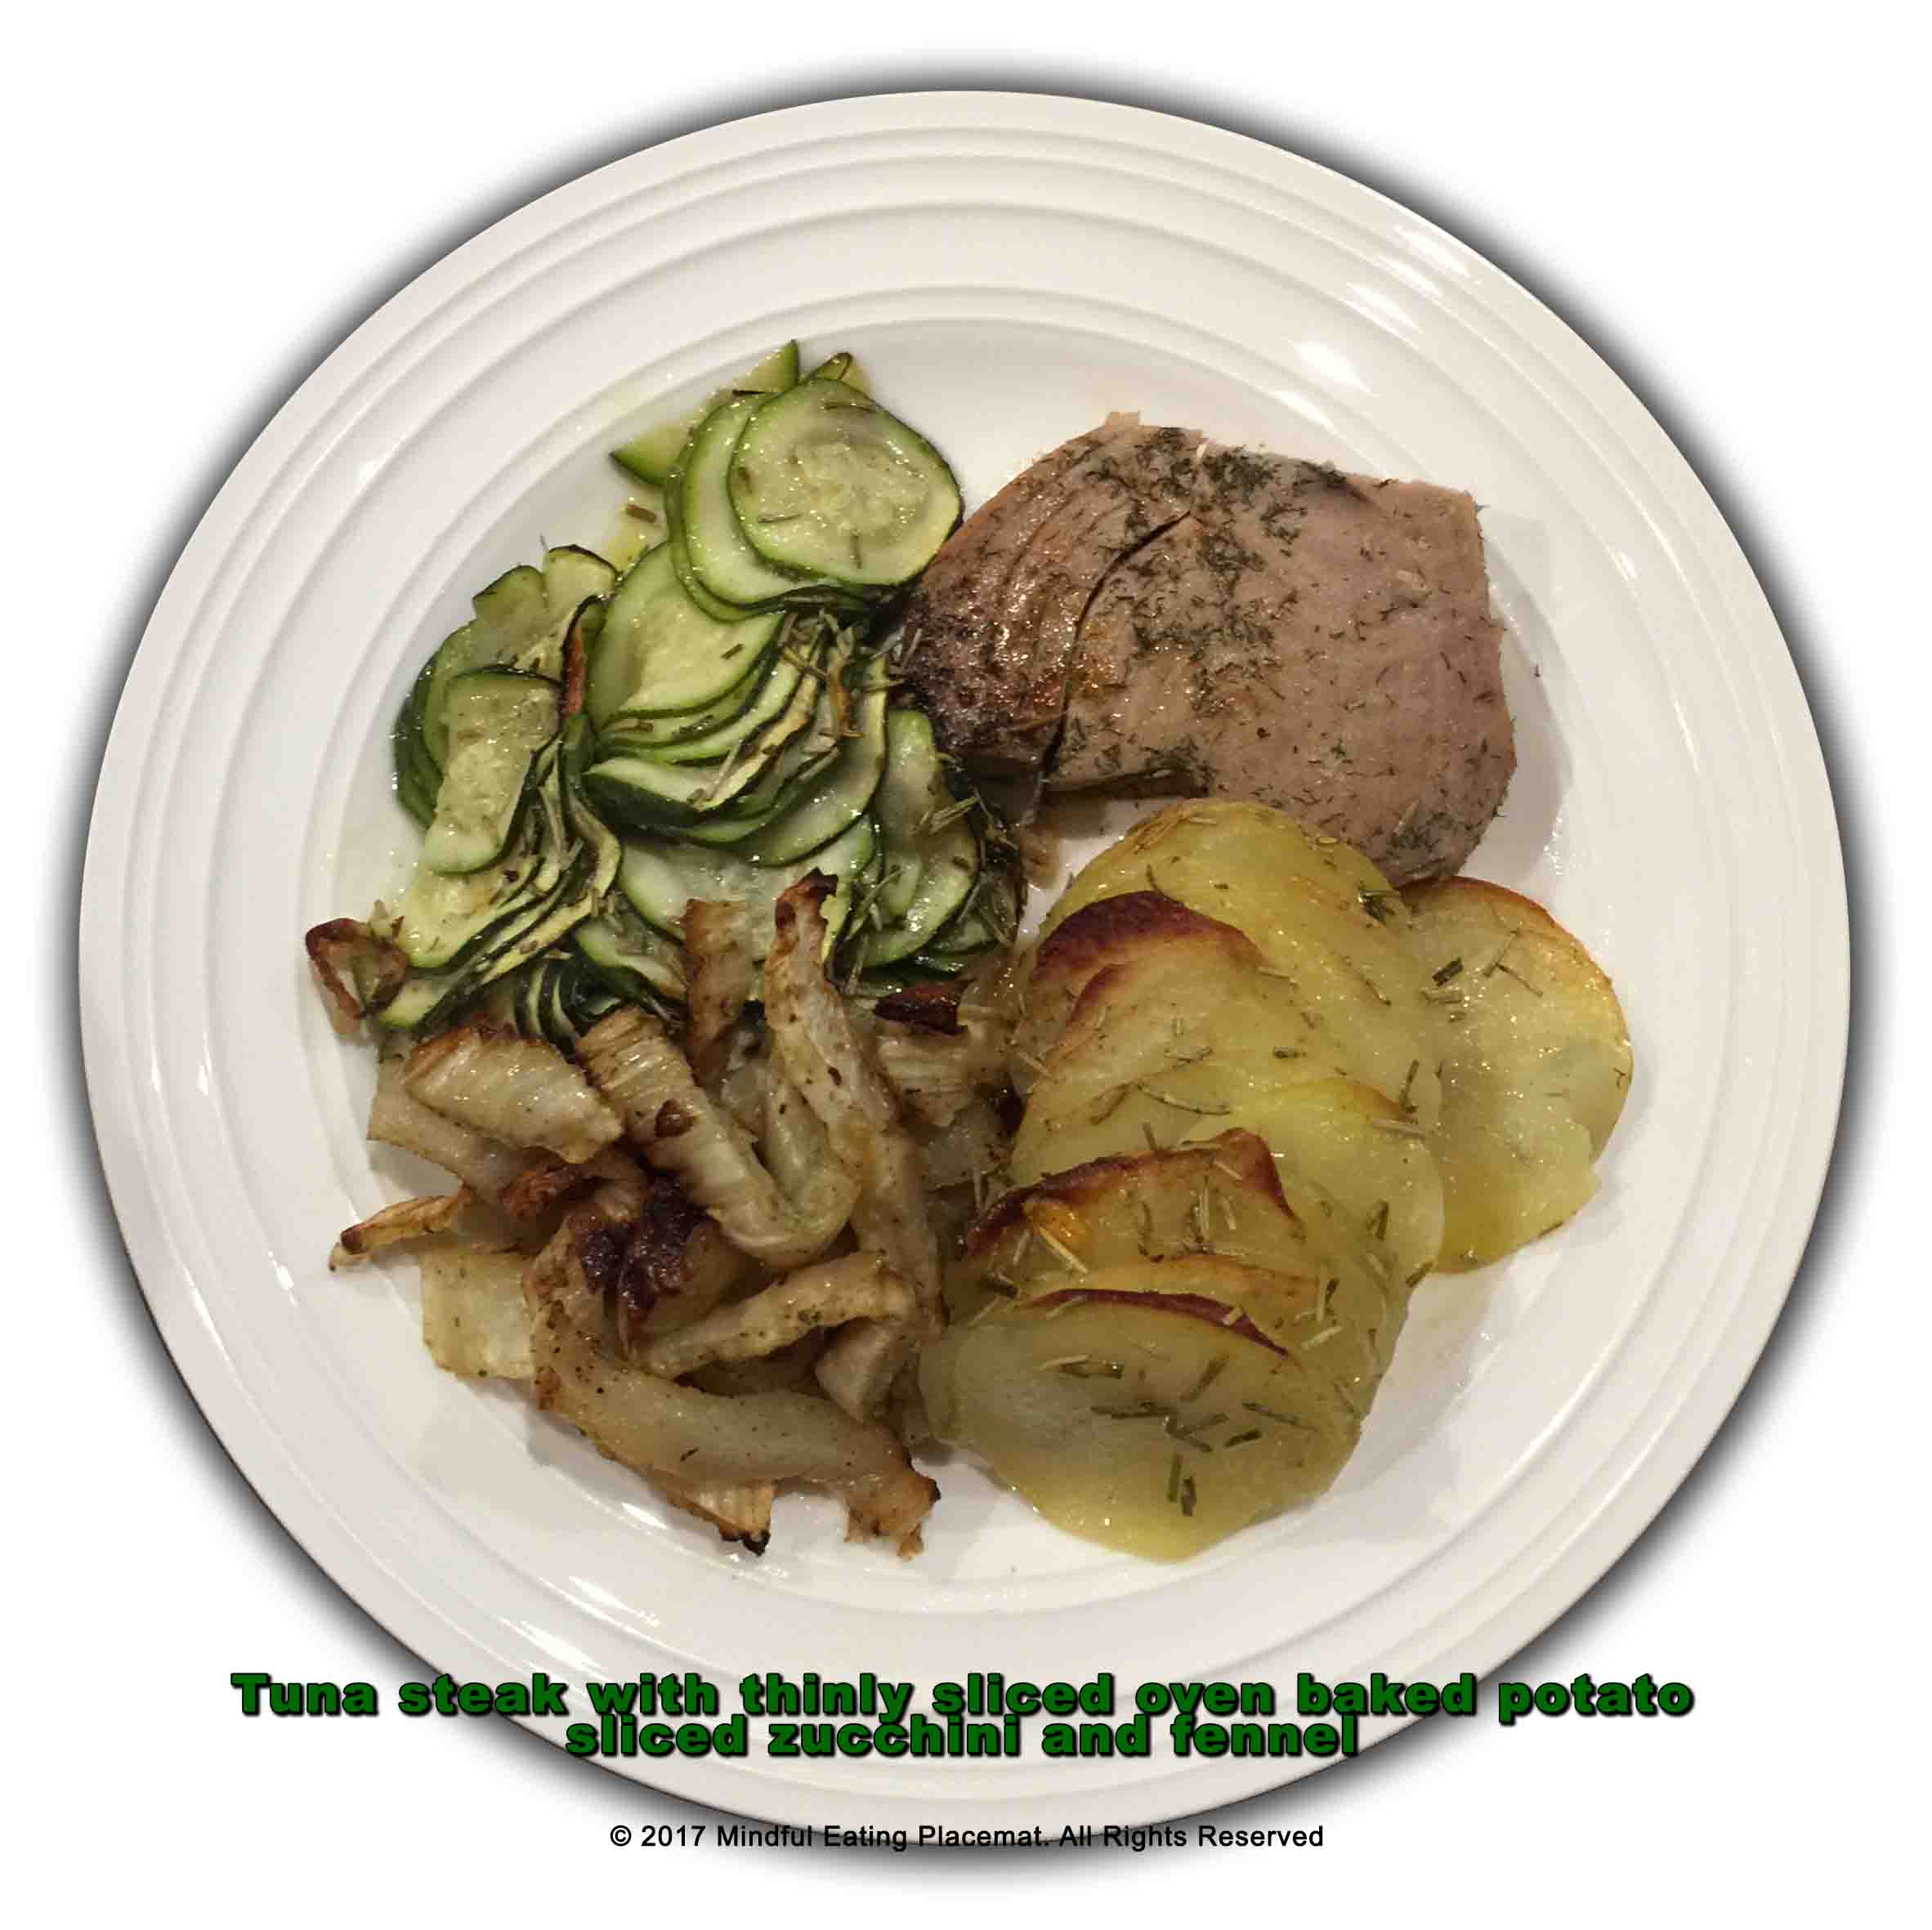 Tuna steak with potato, zucchini and fennel 